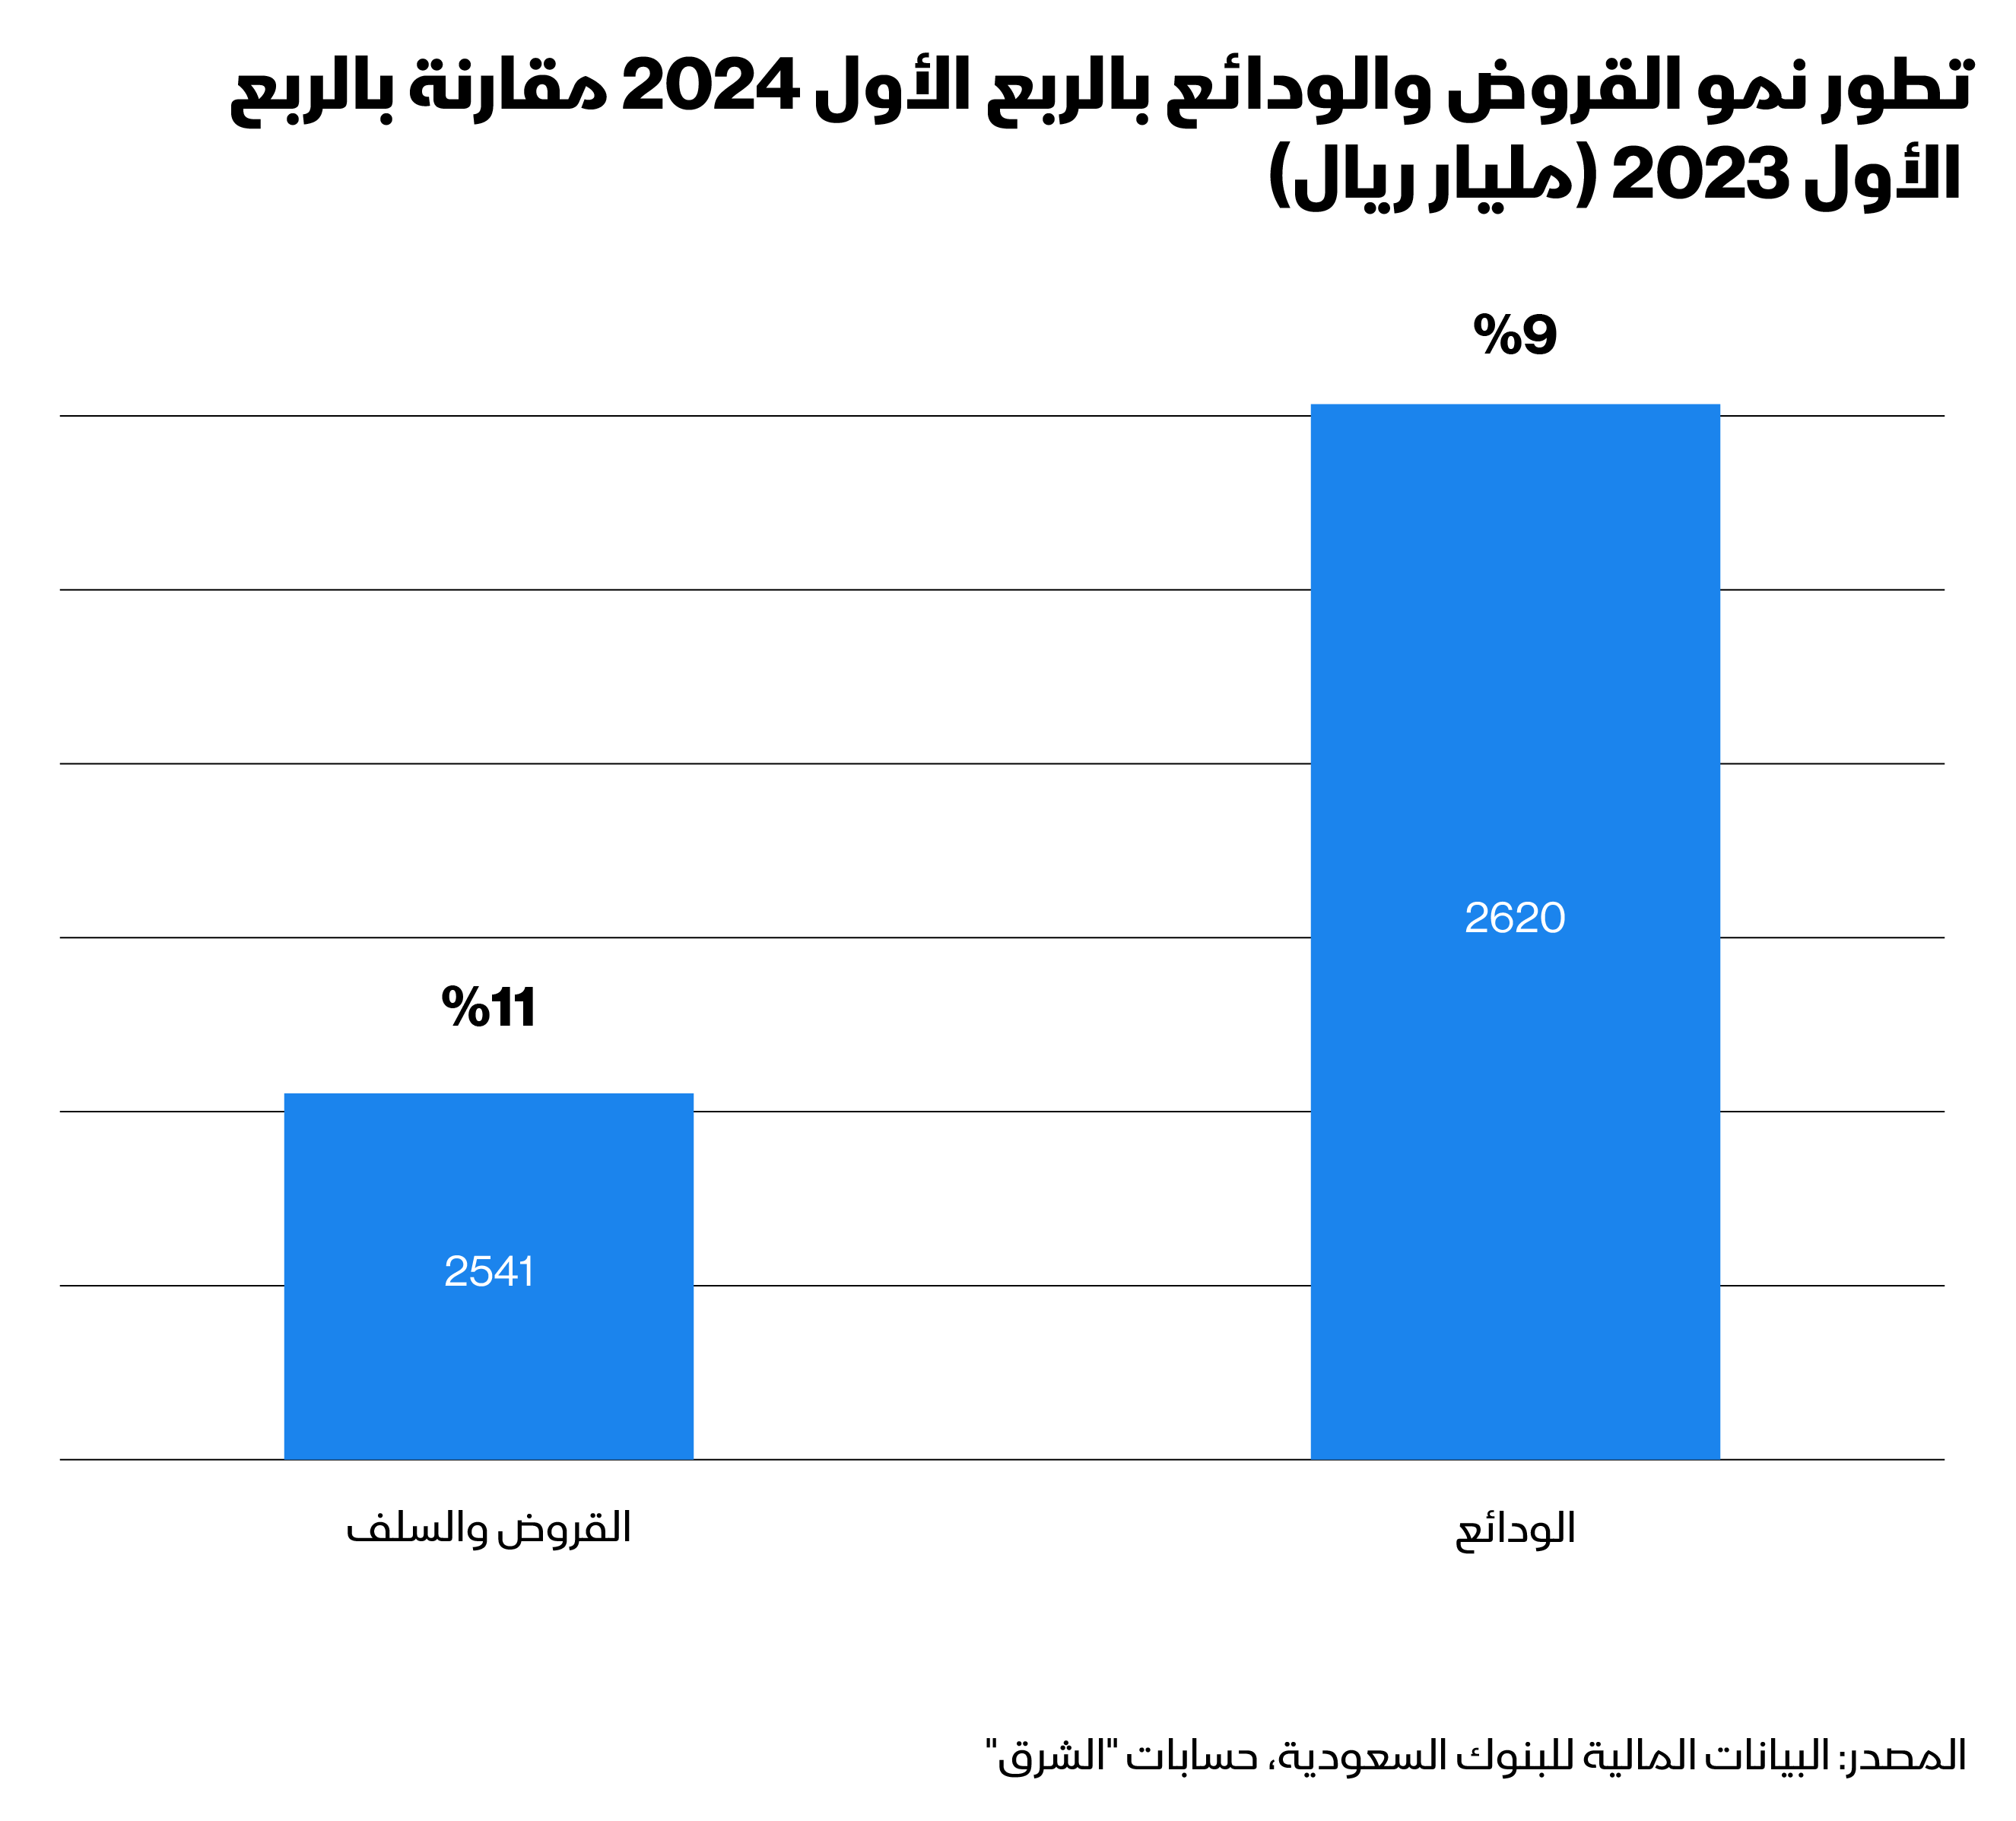 تطور نمو القروض والودائع لدى البنوك السعودية في الربع الأول 2024